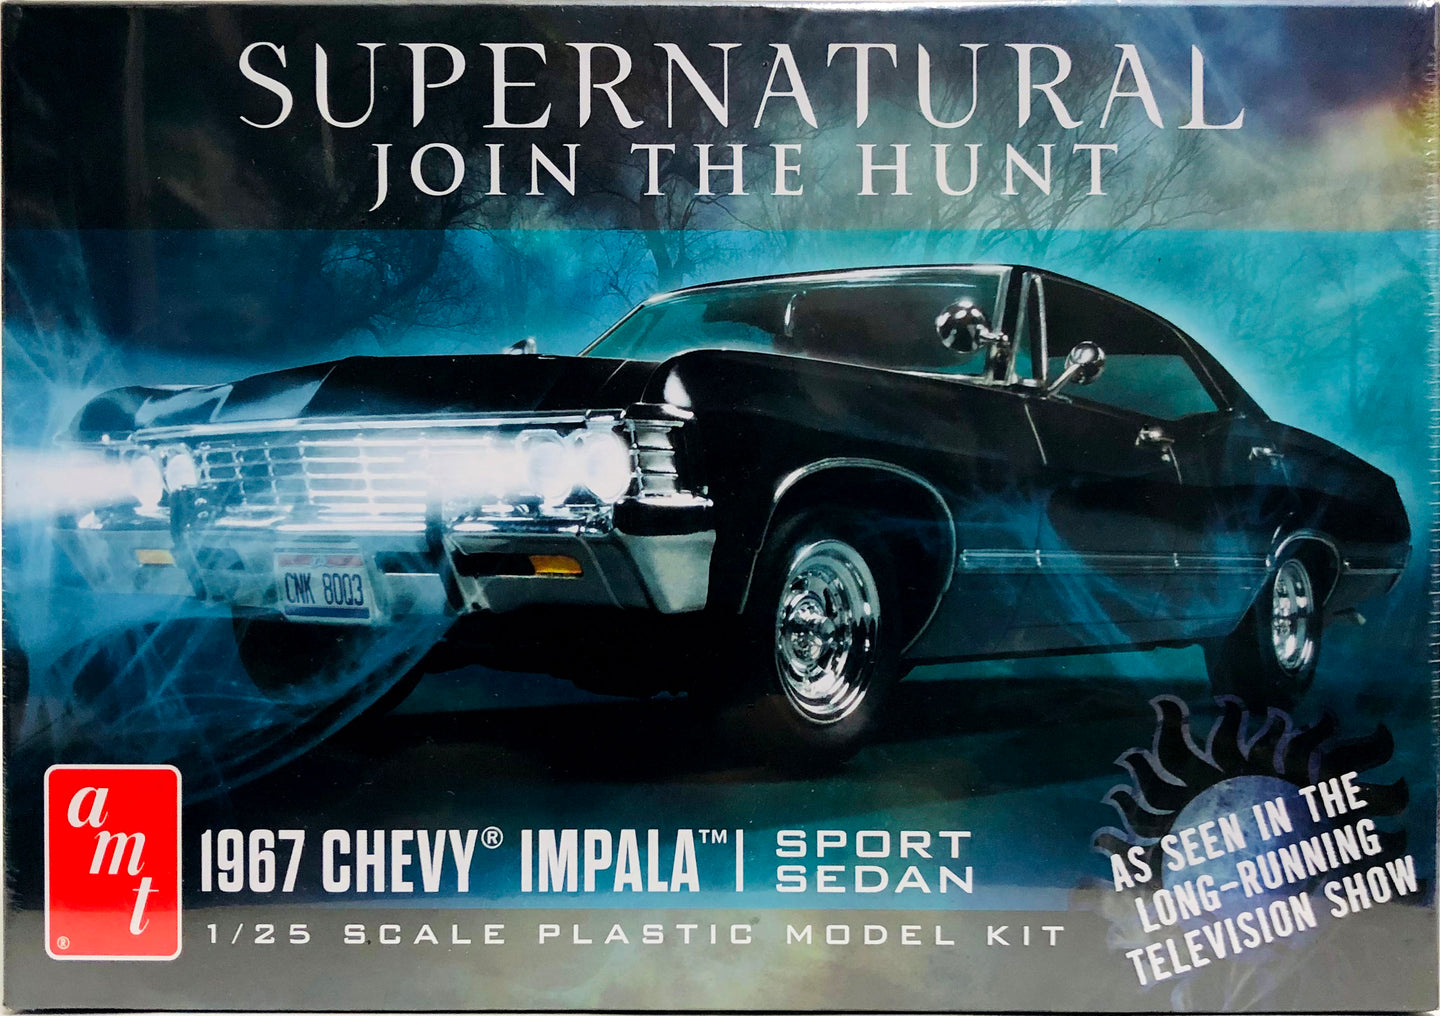 Chevy Impala 67 - Supernatural.